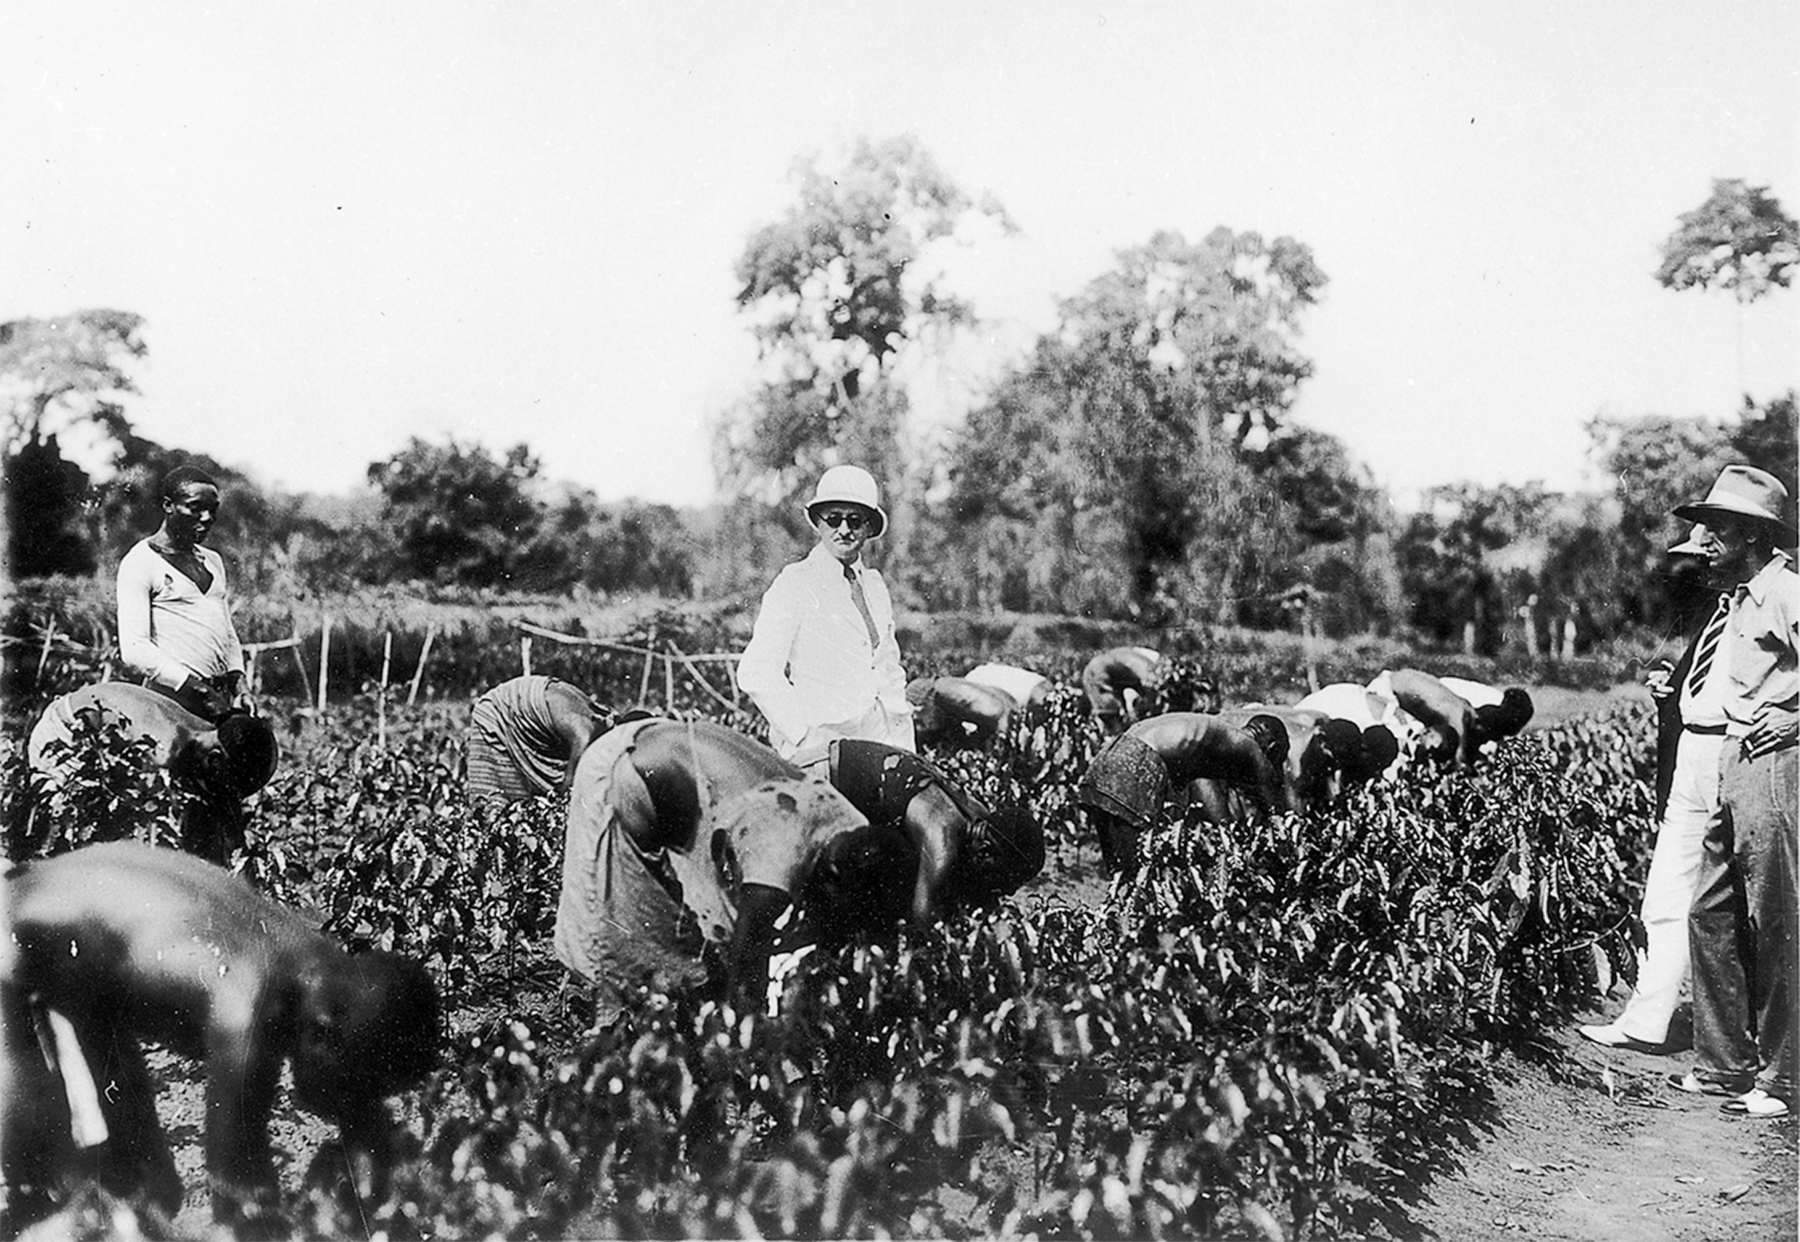 Fotografia em preto e branco. Pessoas negras trabalhando em uma plantação de café. Eles estão com os corpos inclinados para frente, abaixados em direção as plantas. Há alguns homens brancos em pé entre eles, observando. Ao fundo, árvores.